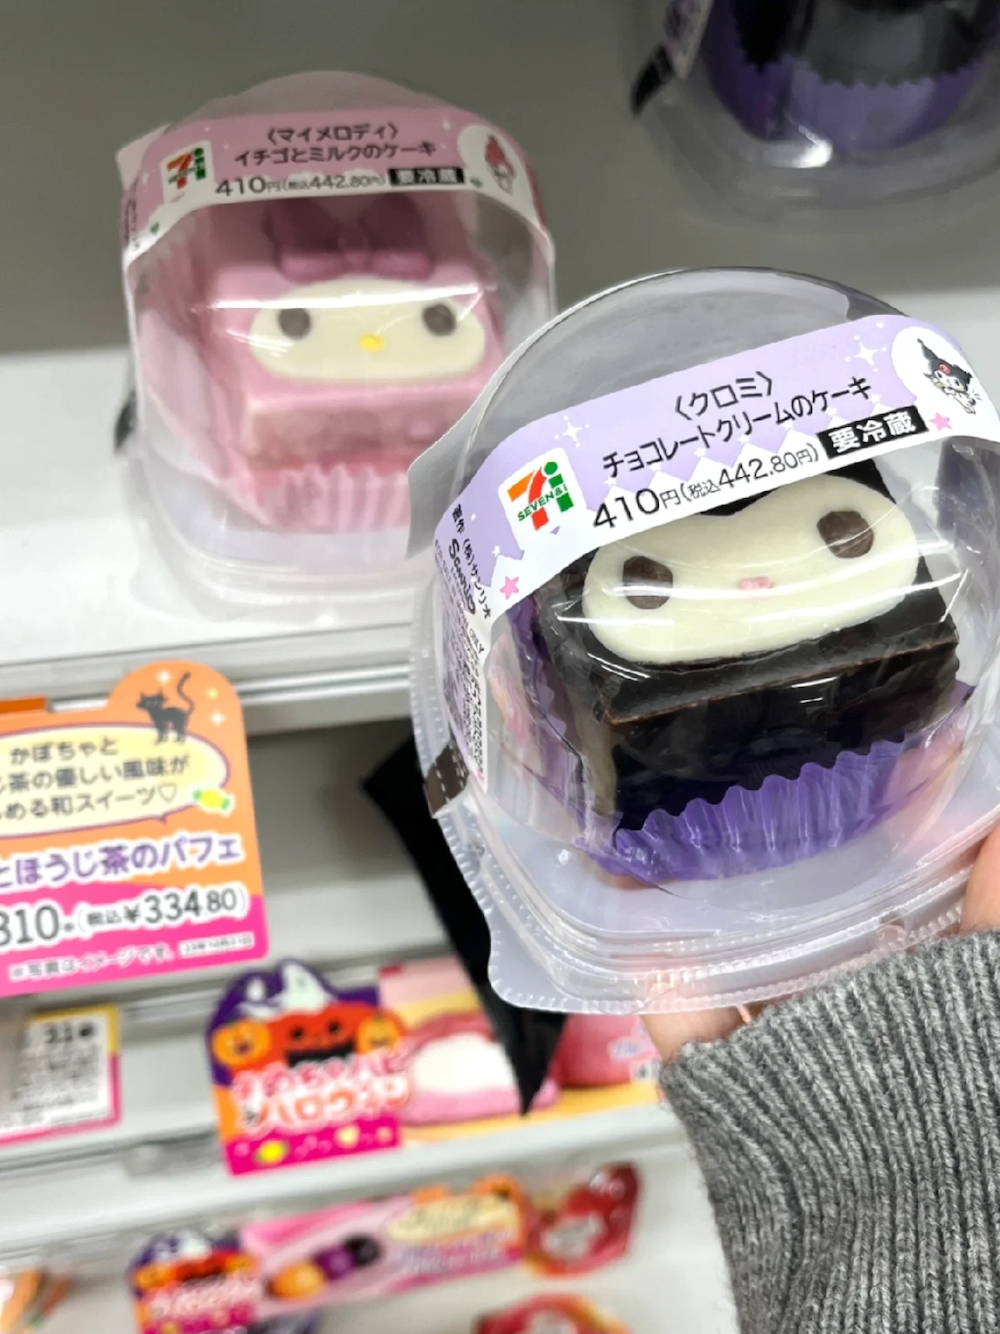 【日本】酷洛米變蛋糕！　7-11推出「三麗鷗主題甜點」美樂蒂、酷洛米齊賣萌　吃酷洛米馬卡龍還送貼紙